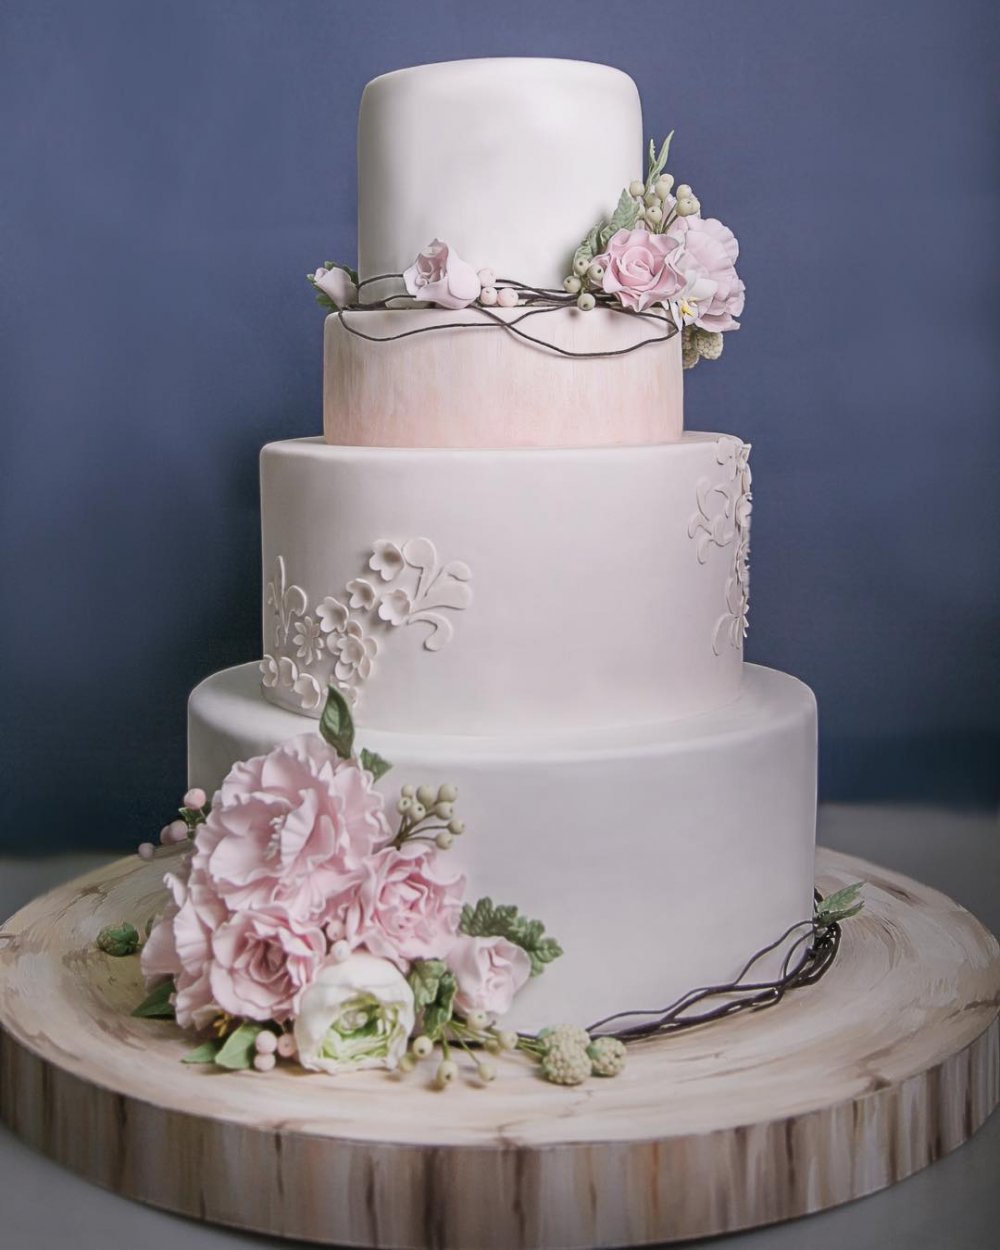 Свадебный торт в 3 яруса с сахарными цветами  кондитерской "Колесо времени".
Эксклюзивный свадебный торт на заказ - исключительно натуральный, авторский декор. На дегустации 15 начинок на выбор. Доставка. Заказ на сайте нашей кондитерской.